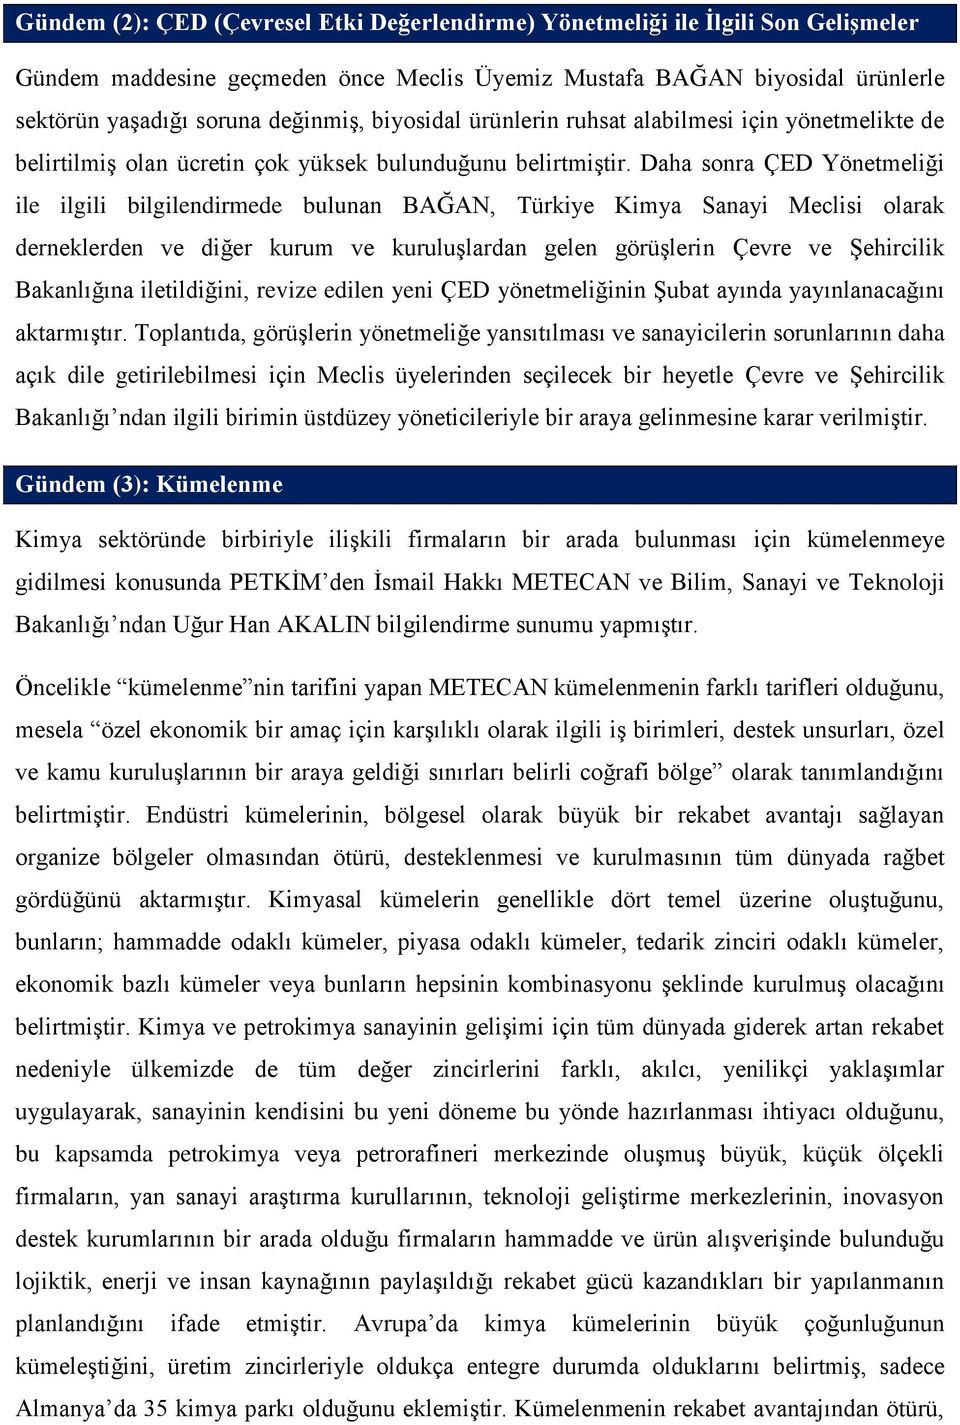 Daha sonra ÇED Yönetmeliği ile ilgili bilgilendirmede bulunan BAĞAN, Türkiye Kimya Sanayi Meclisi olarak derneklerden ve diğer kurum ve kuruluşlardan gelen görüşlerin Çevre ve Şehircilik Bakanlığına